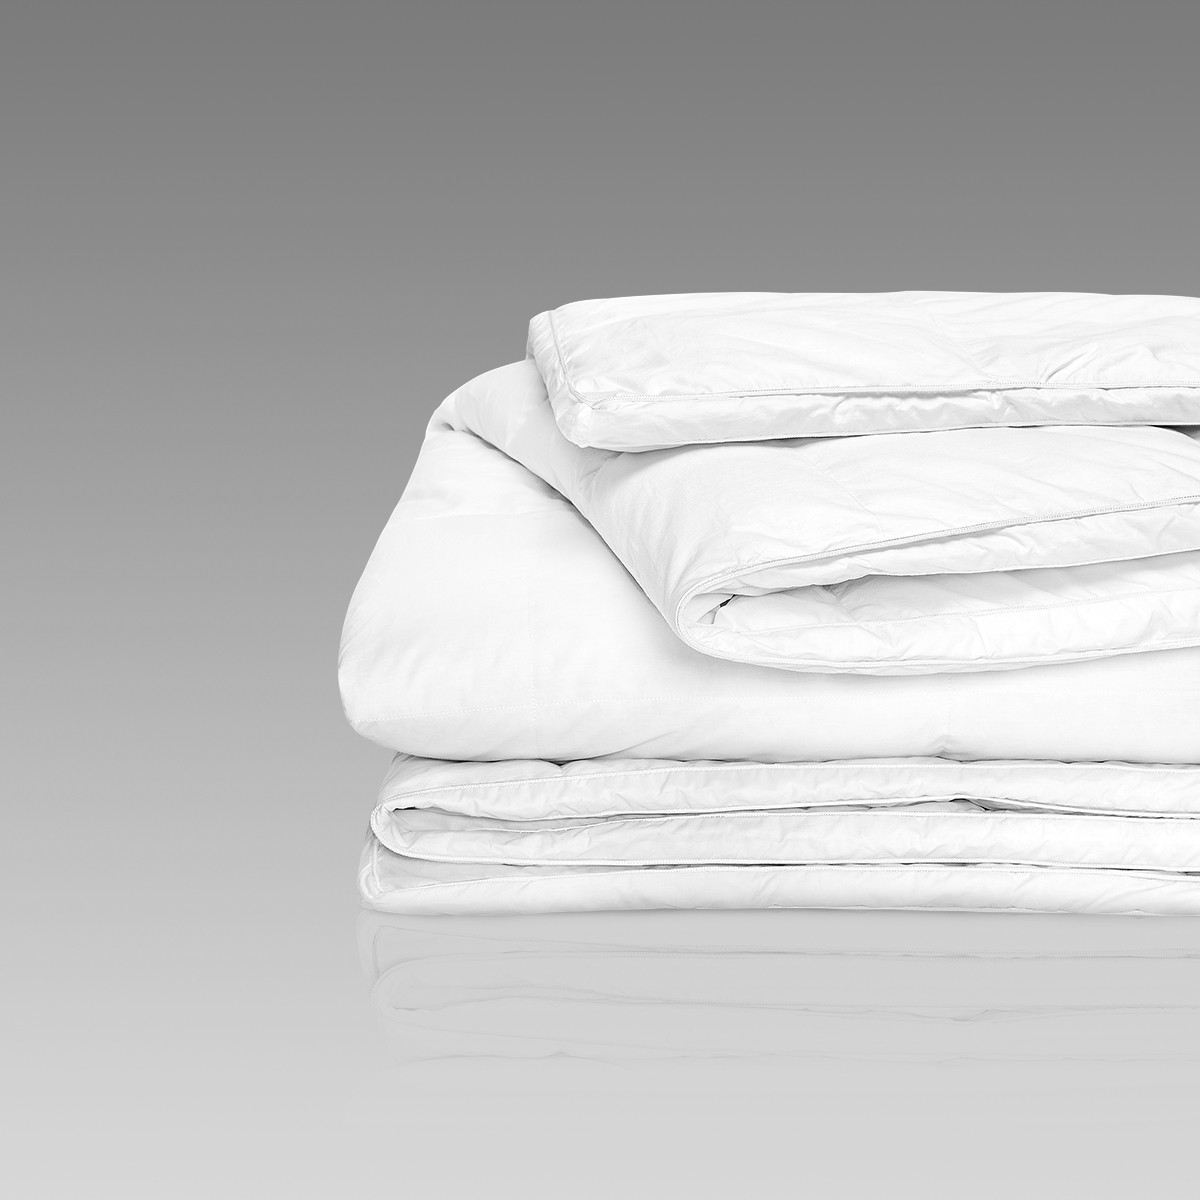 Одеяла Одеяло Артемис  - Фото